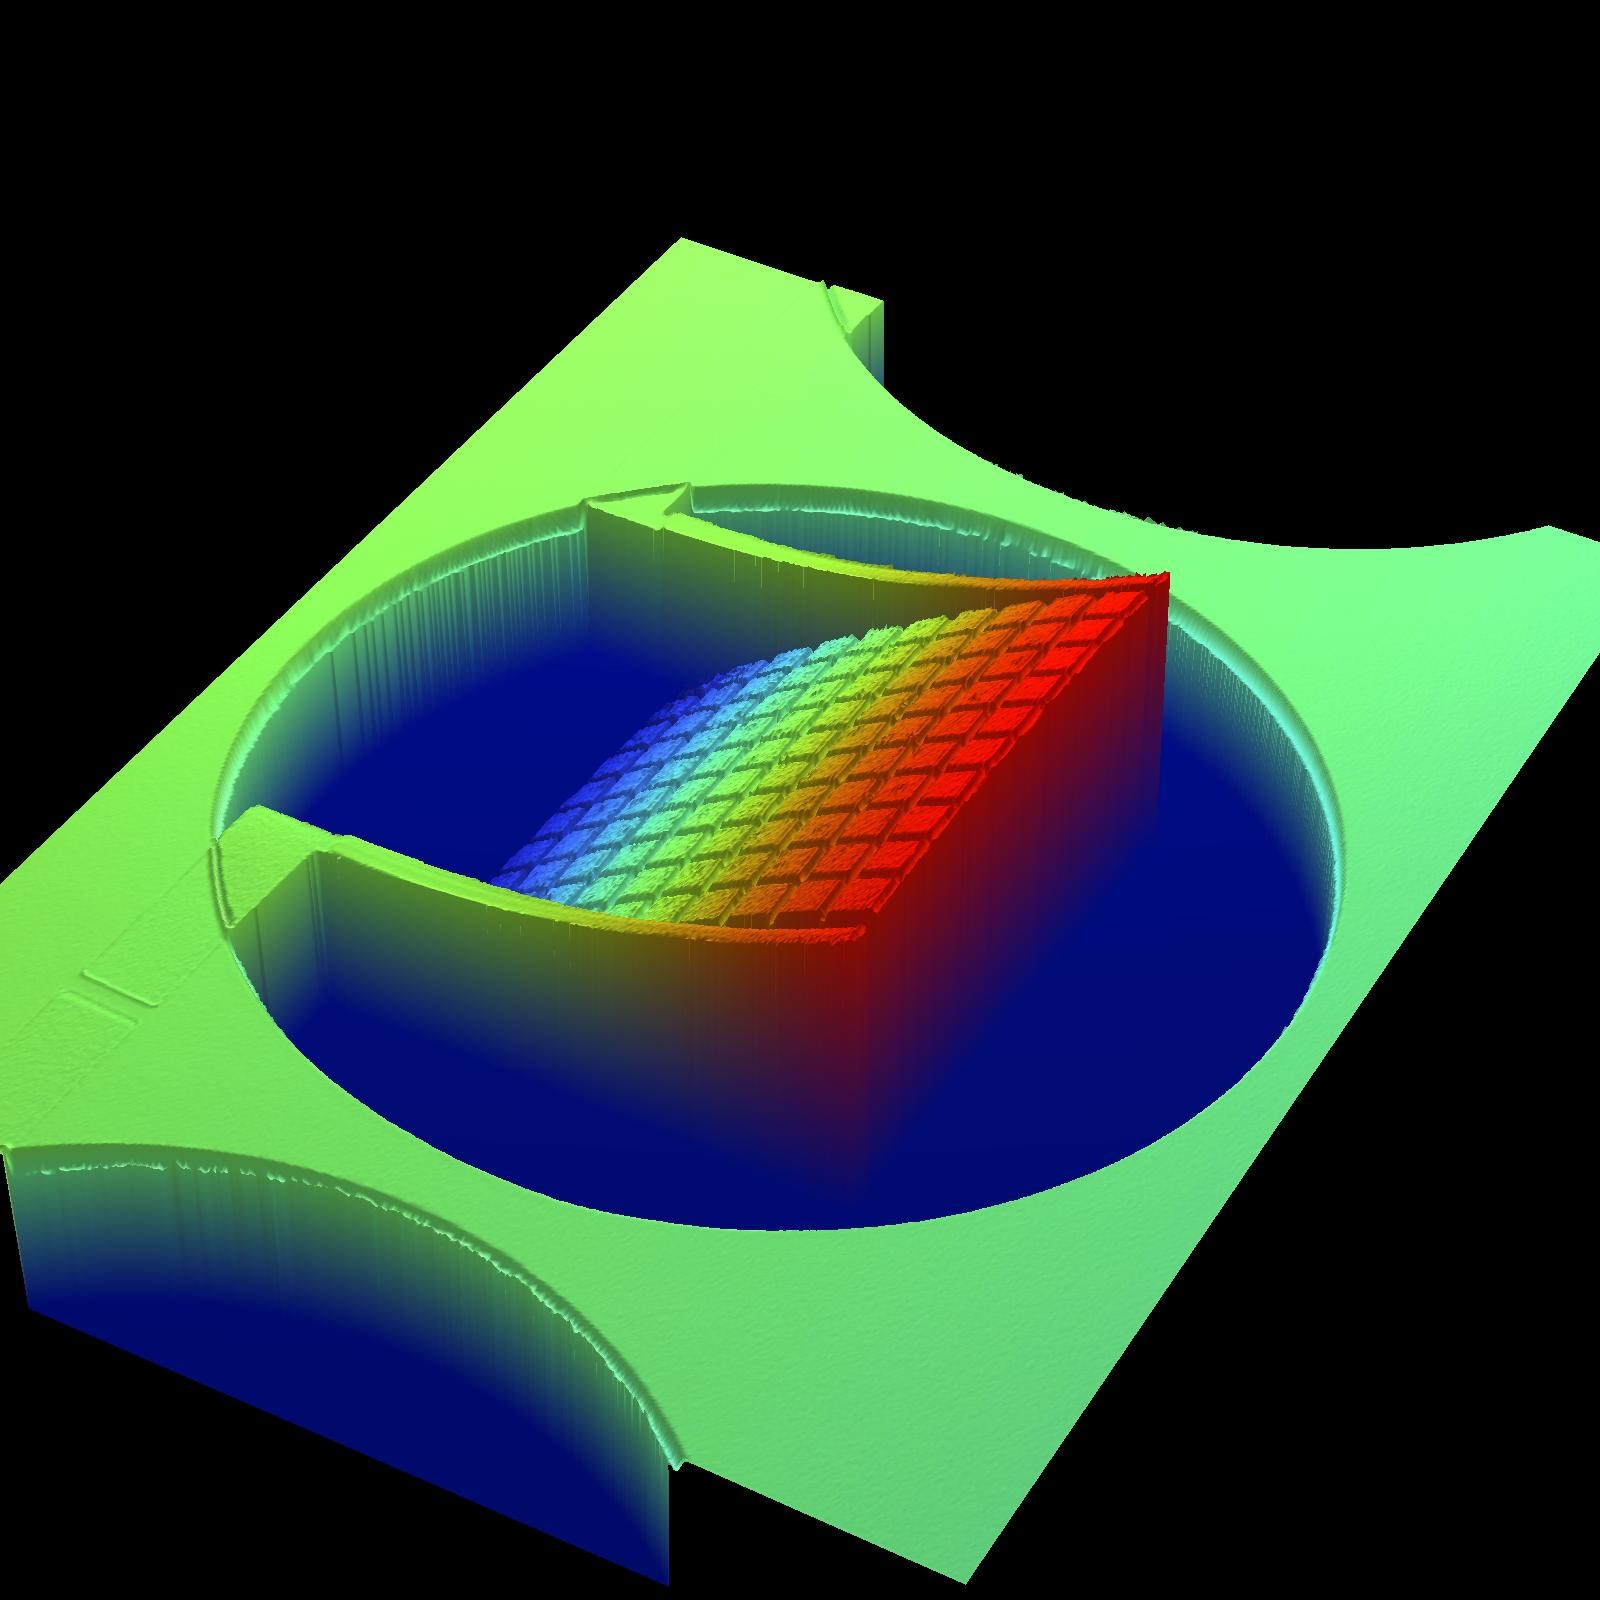 Estrutura de metamaterial integrada a transdutor térmico nanomecânico para aumentar absorção de ondas eletromagnéticas na faixa THz (Foto: Optical Profilometer Metamaterials/Flickr)